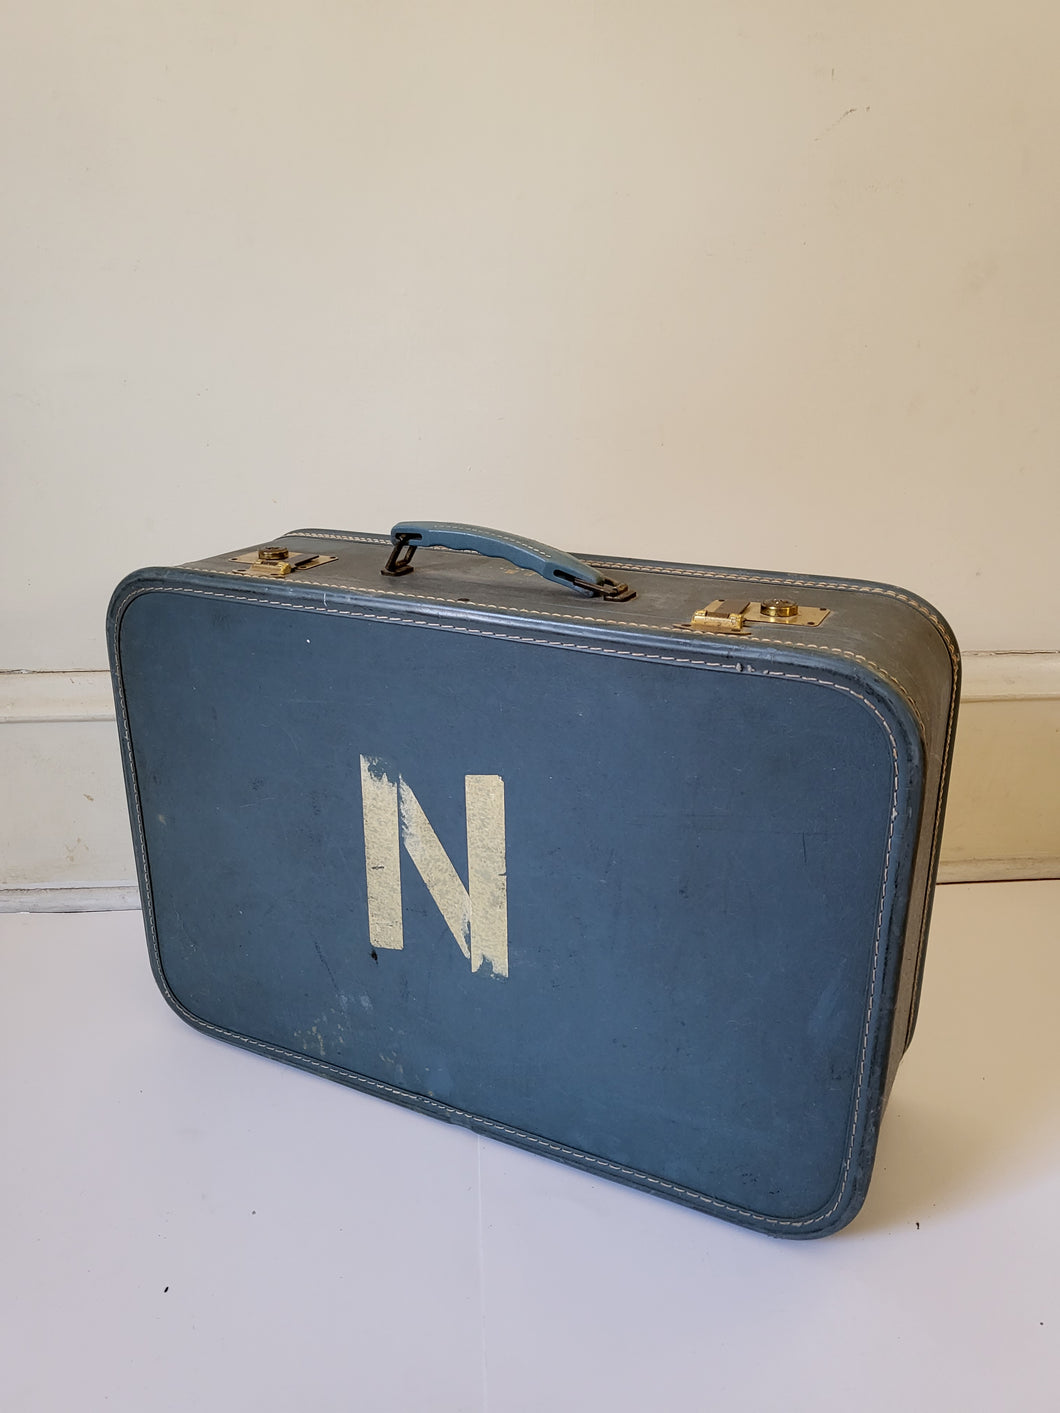 Blue Vintage Travel Suitcase